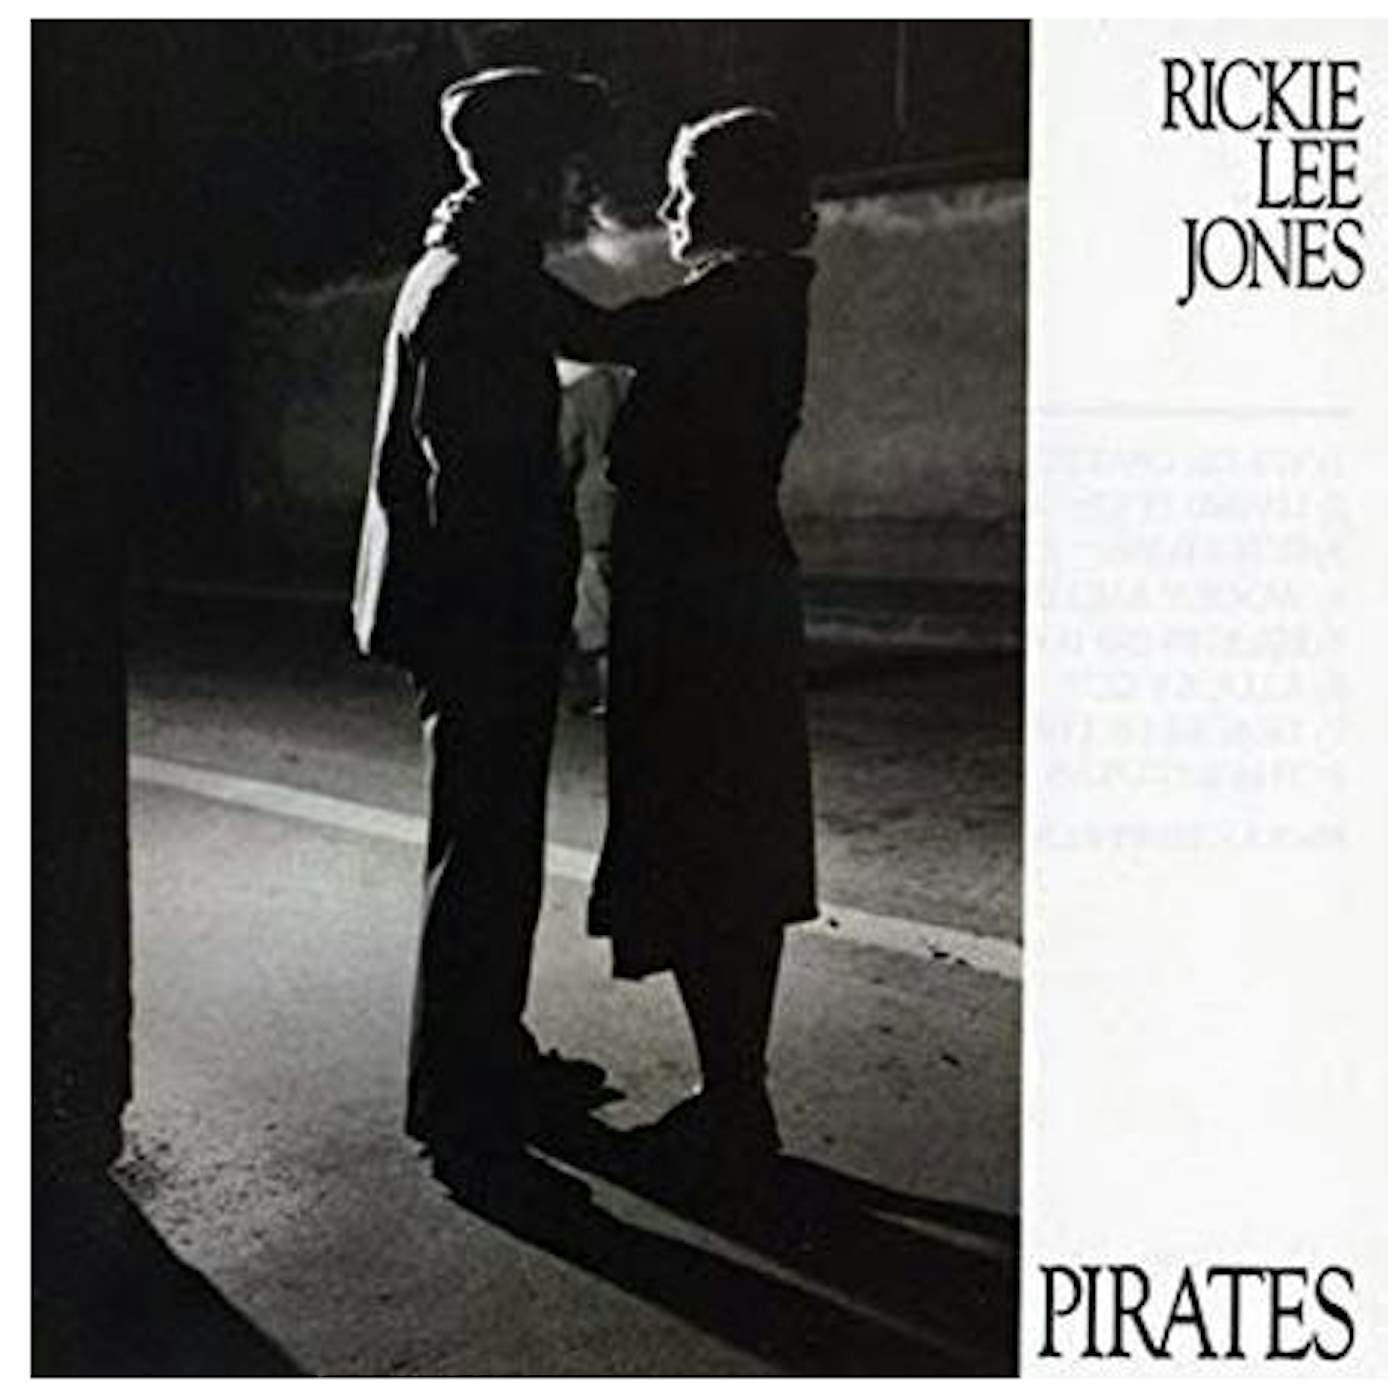 Rickie Lee Jones Pirates vinyl record